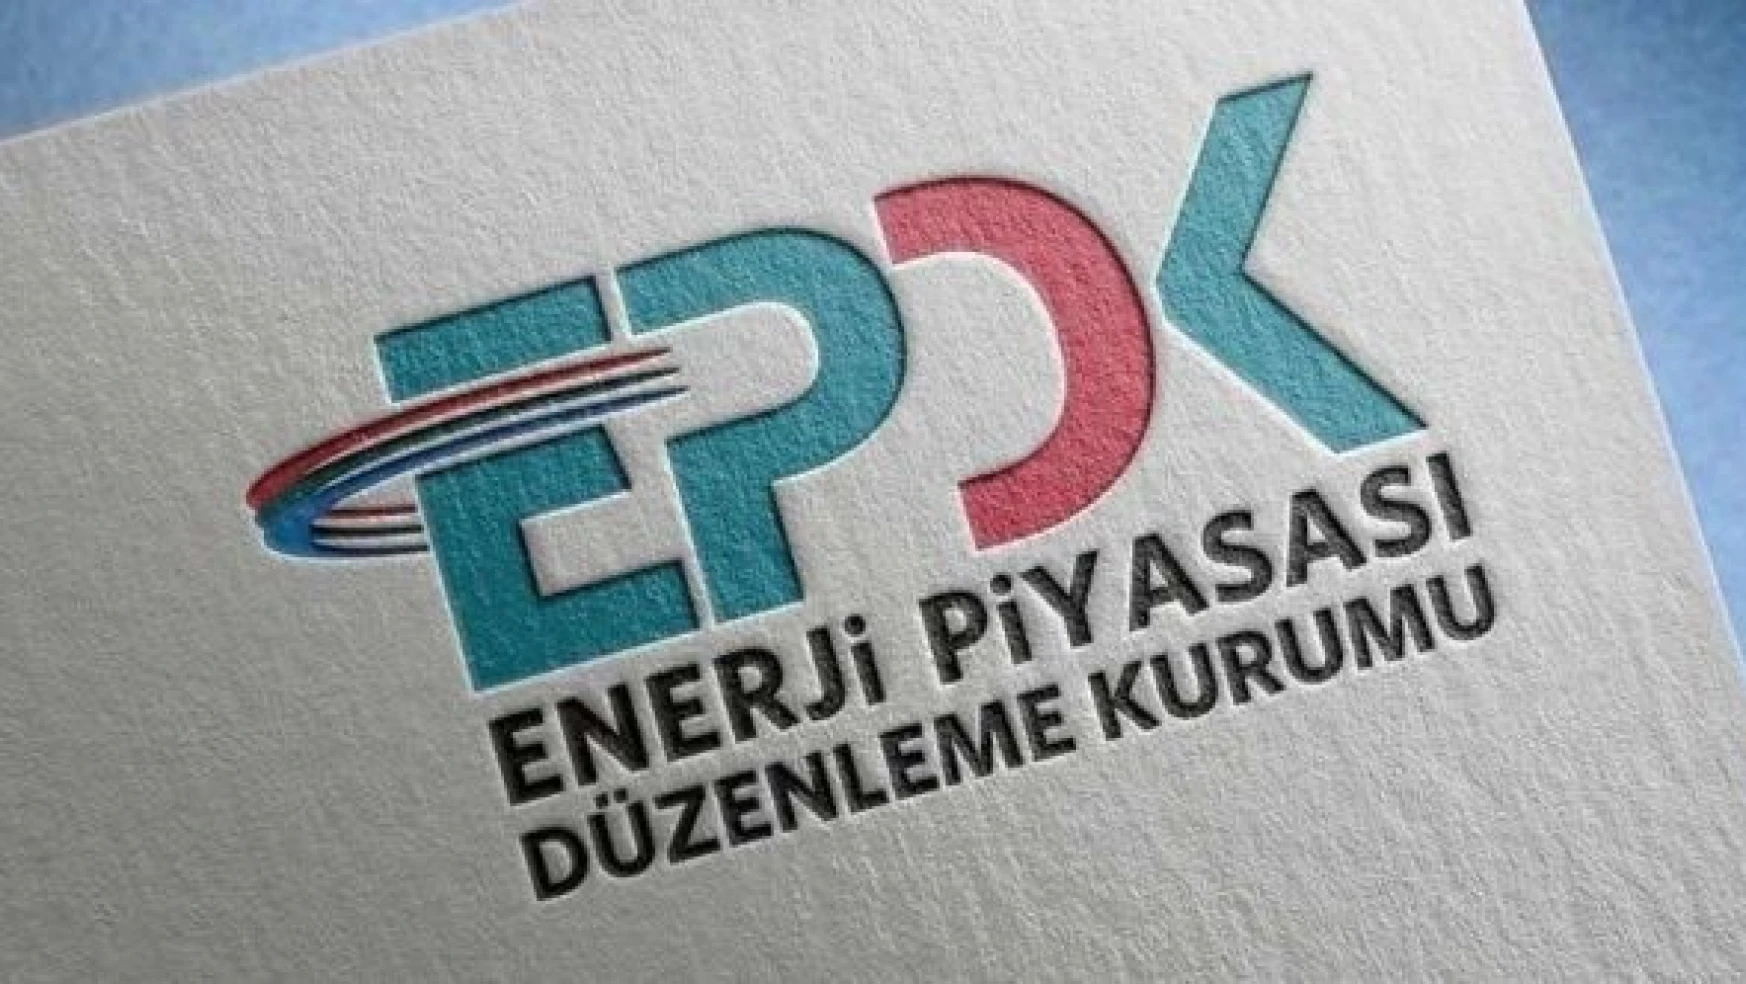 EPDK Başkanı: " Tüketicilerimizin sırtına yük olacak hiçbir adıma onay vermeyeceğiz"